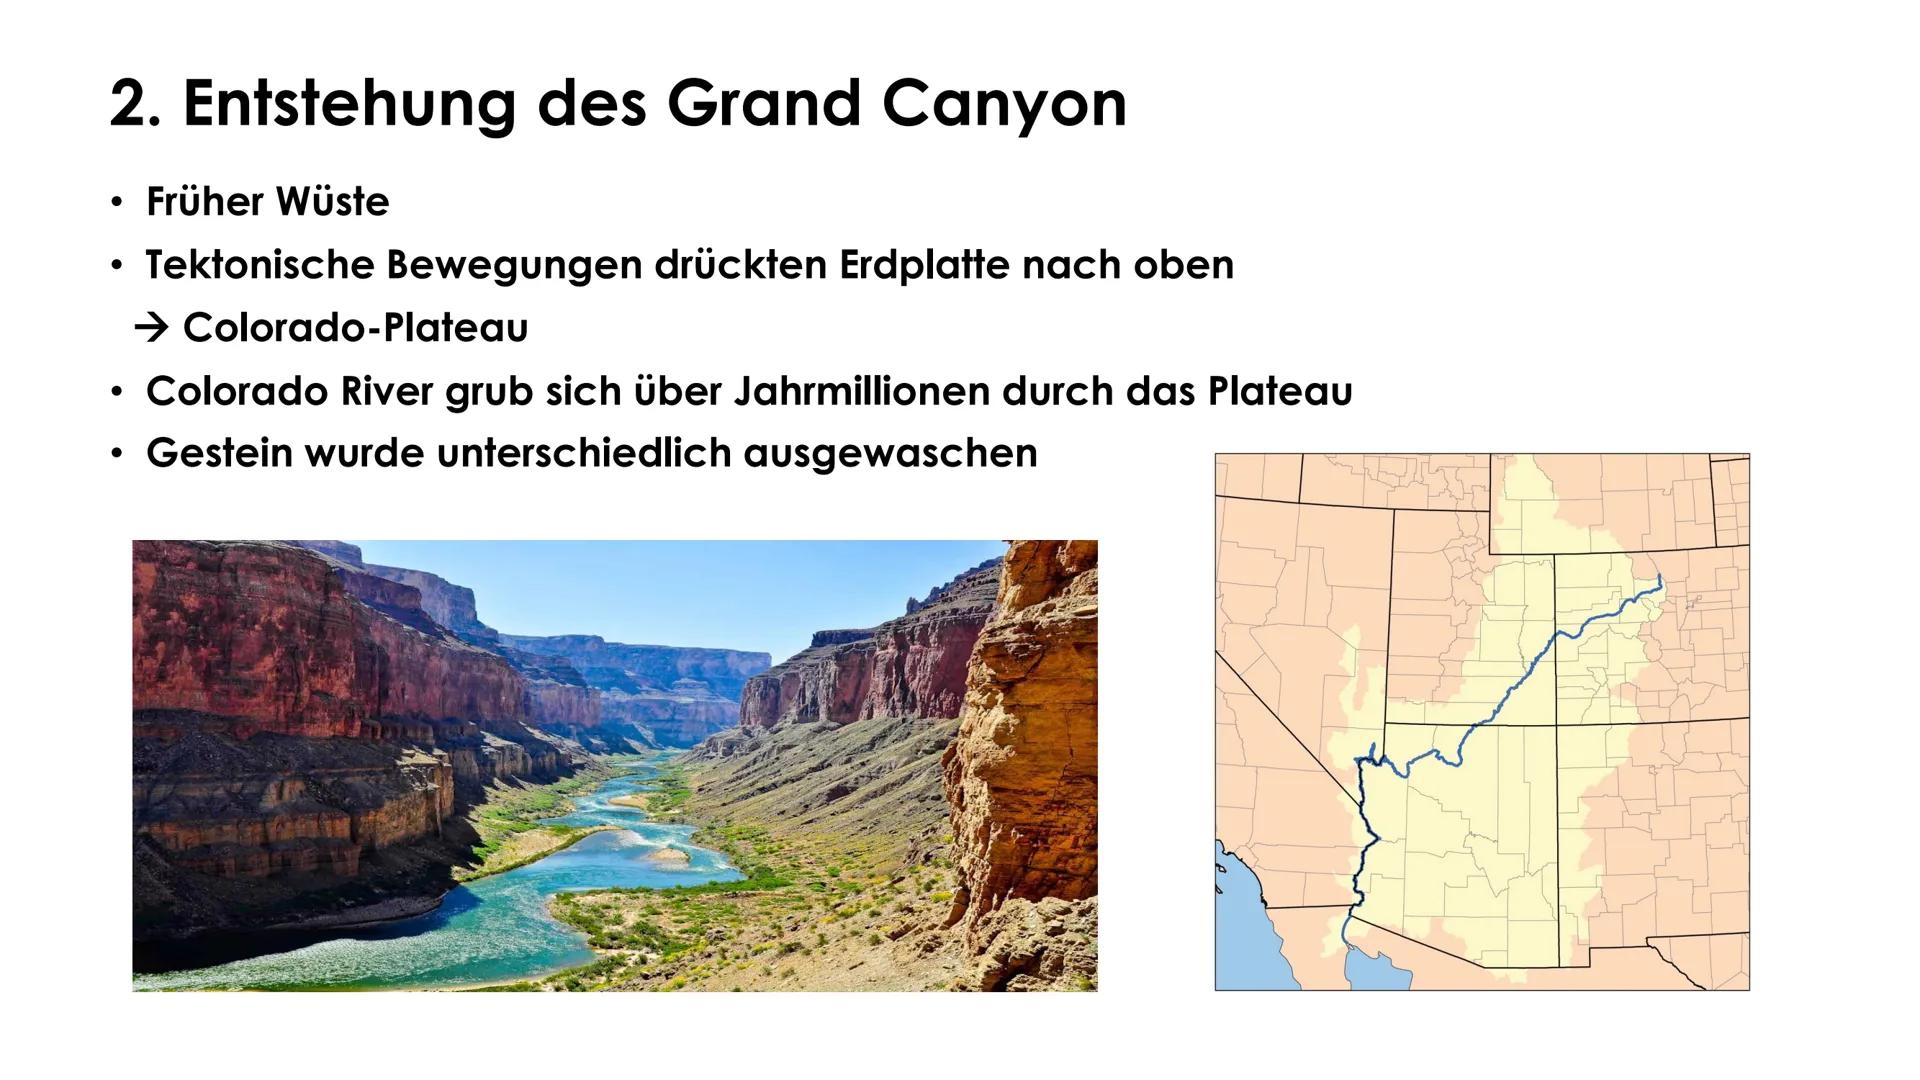 Grand Canyon
TEKET
Erdkunde GFS Marie-Sophie Pfeffer Gliederung
1. Allgemeine Informationen
- Lage
Fakten
2. Entstehung
- Verschiedene Geste